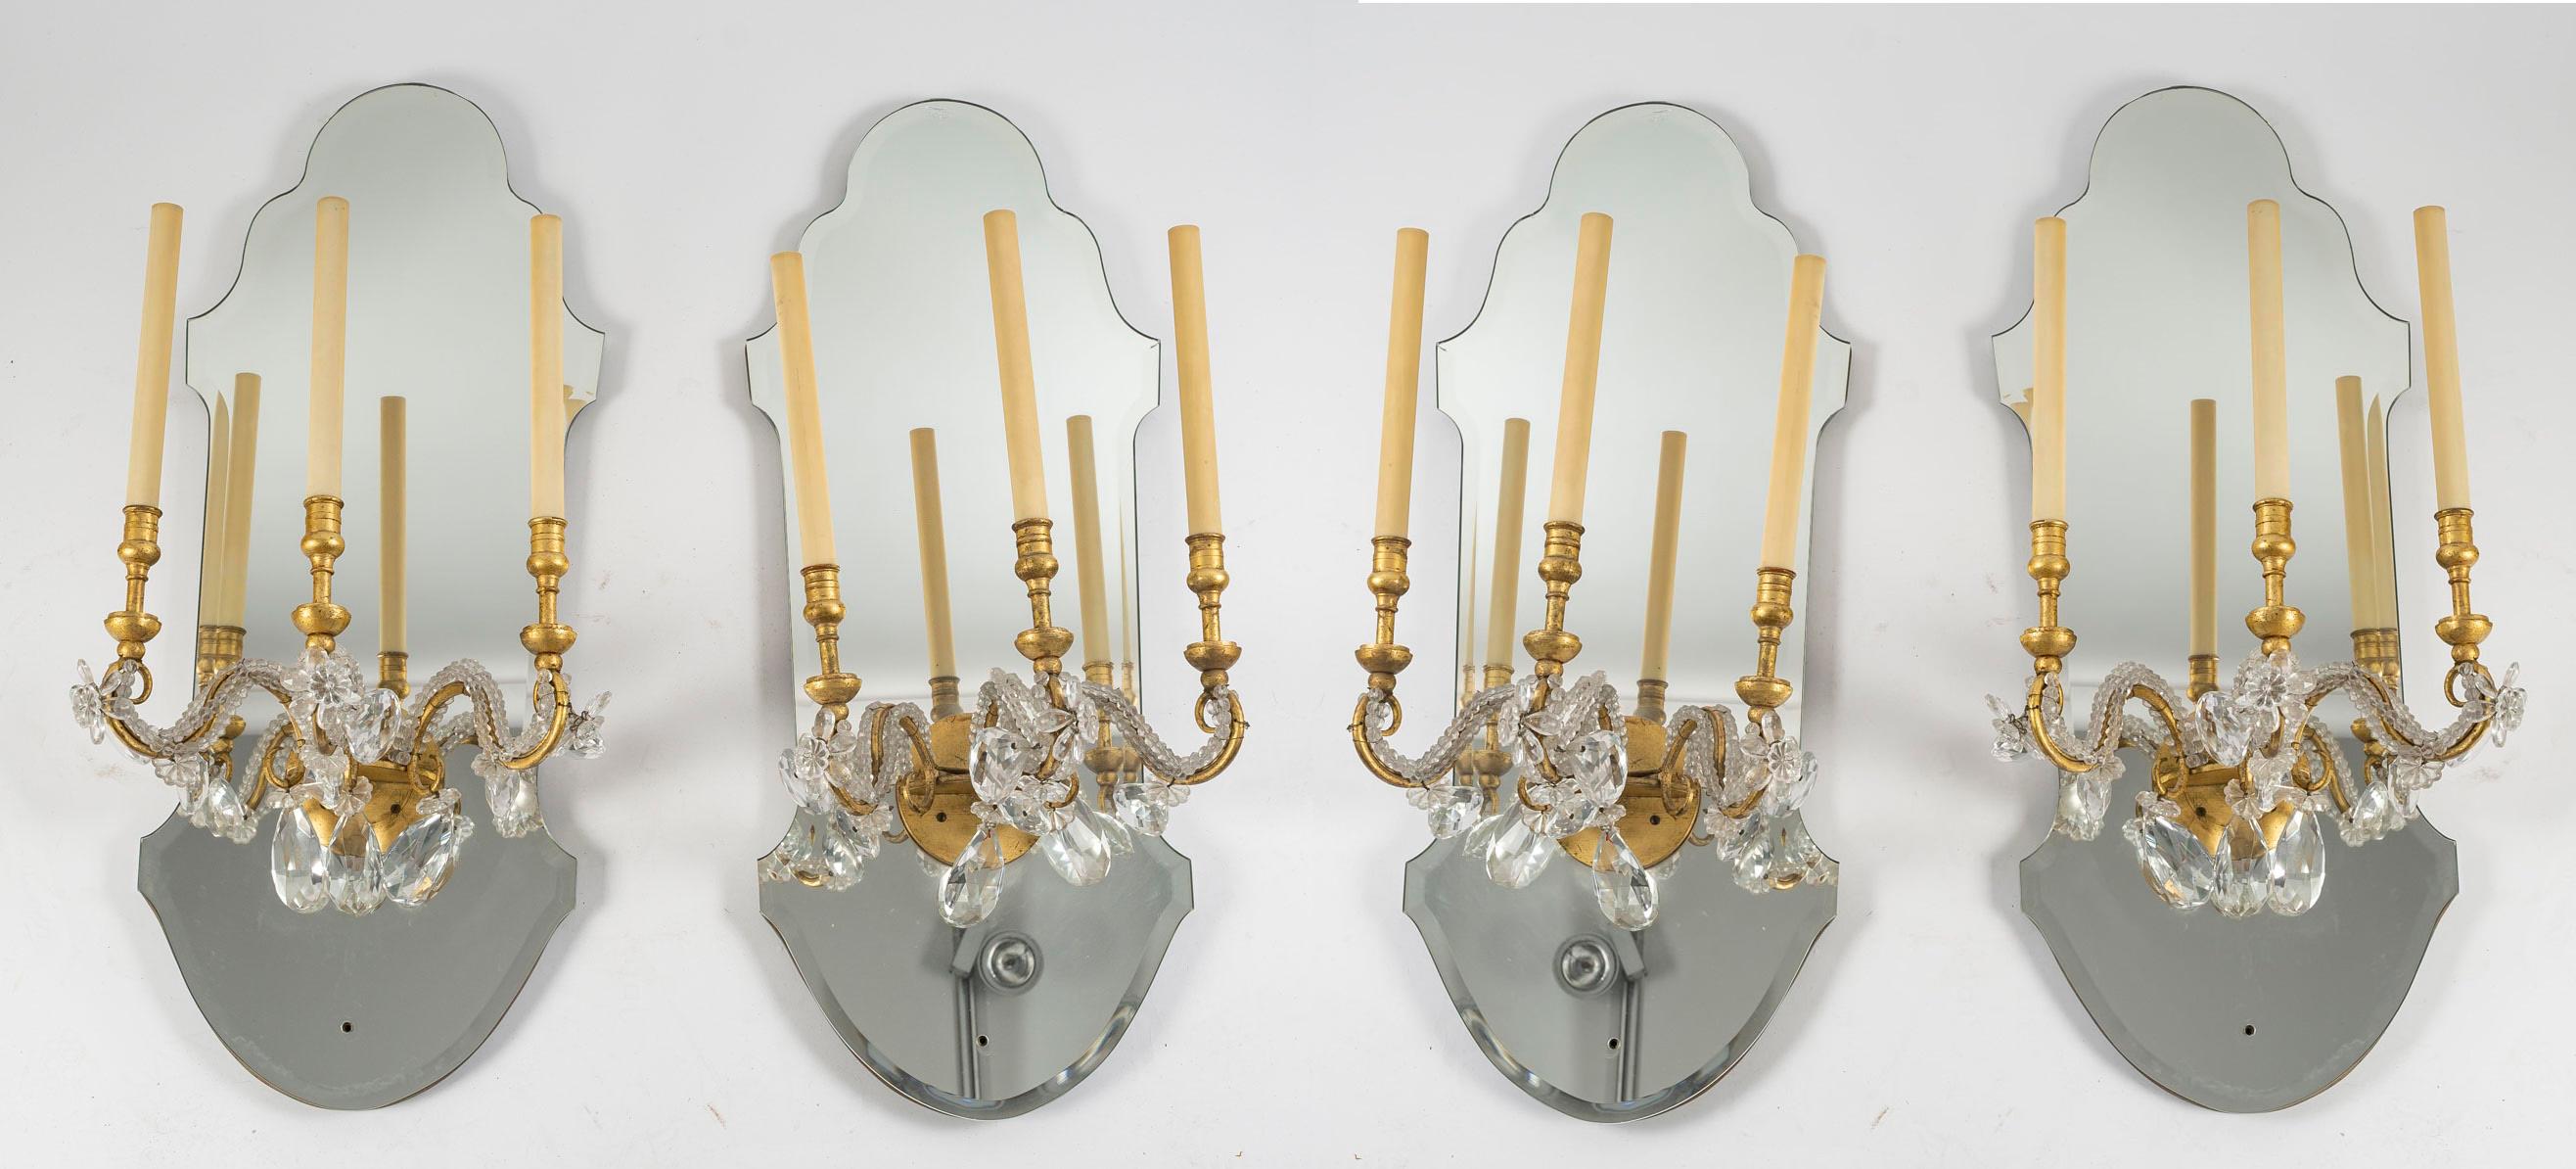 Suite von 6 vergoldeten Eisen- und Spiegelleuchten mit Glastropfen, 1950-1960.

Suite von 6 Delisle-Leuchten, 1950-1960, aus Spiegel und vergoldetem Eisen mit Glastropfen.  
H: 85cm, B: 33cm, T: 30cm